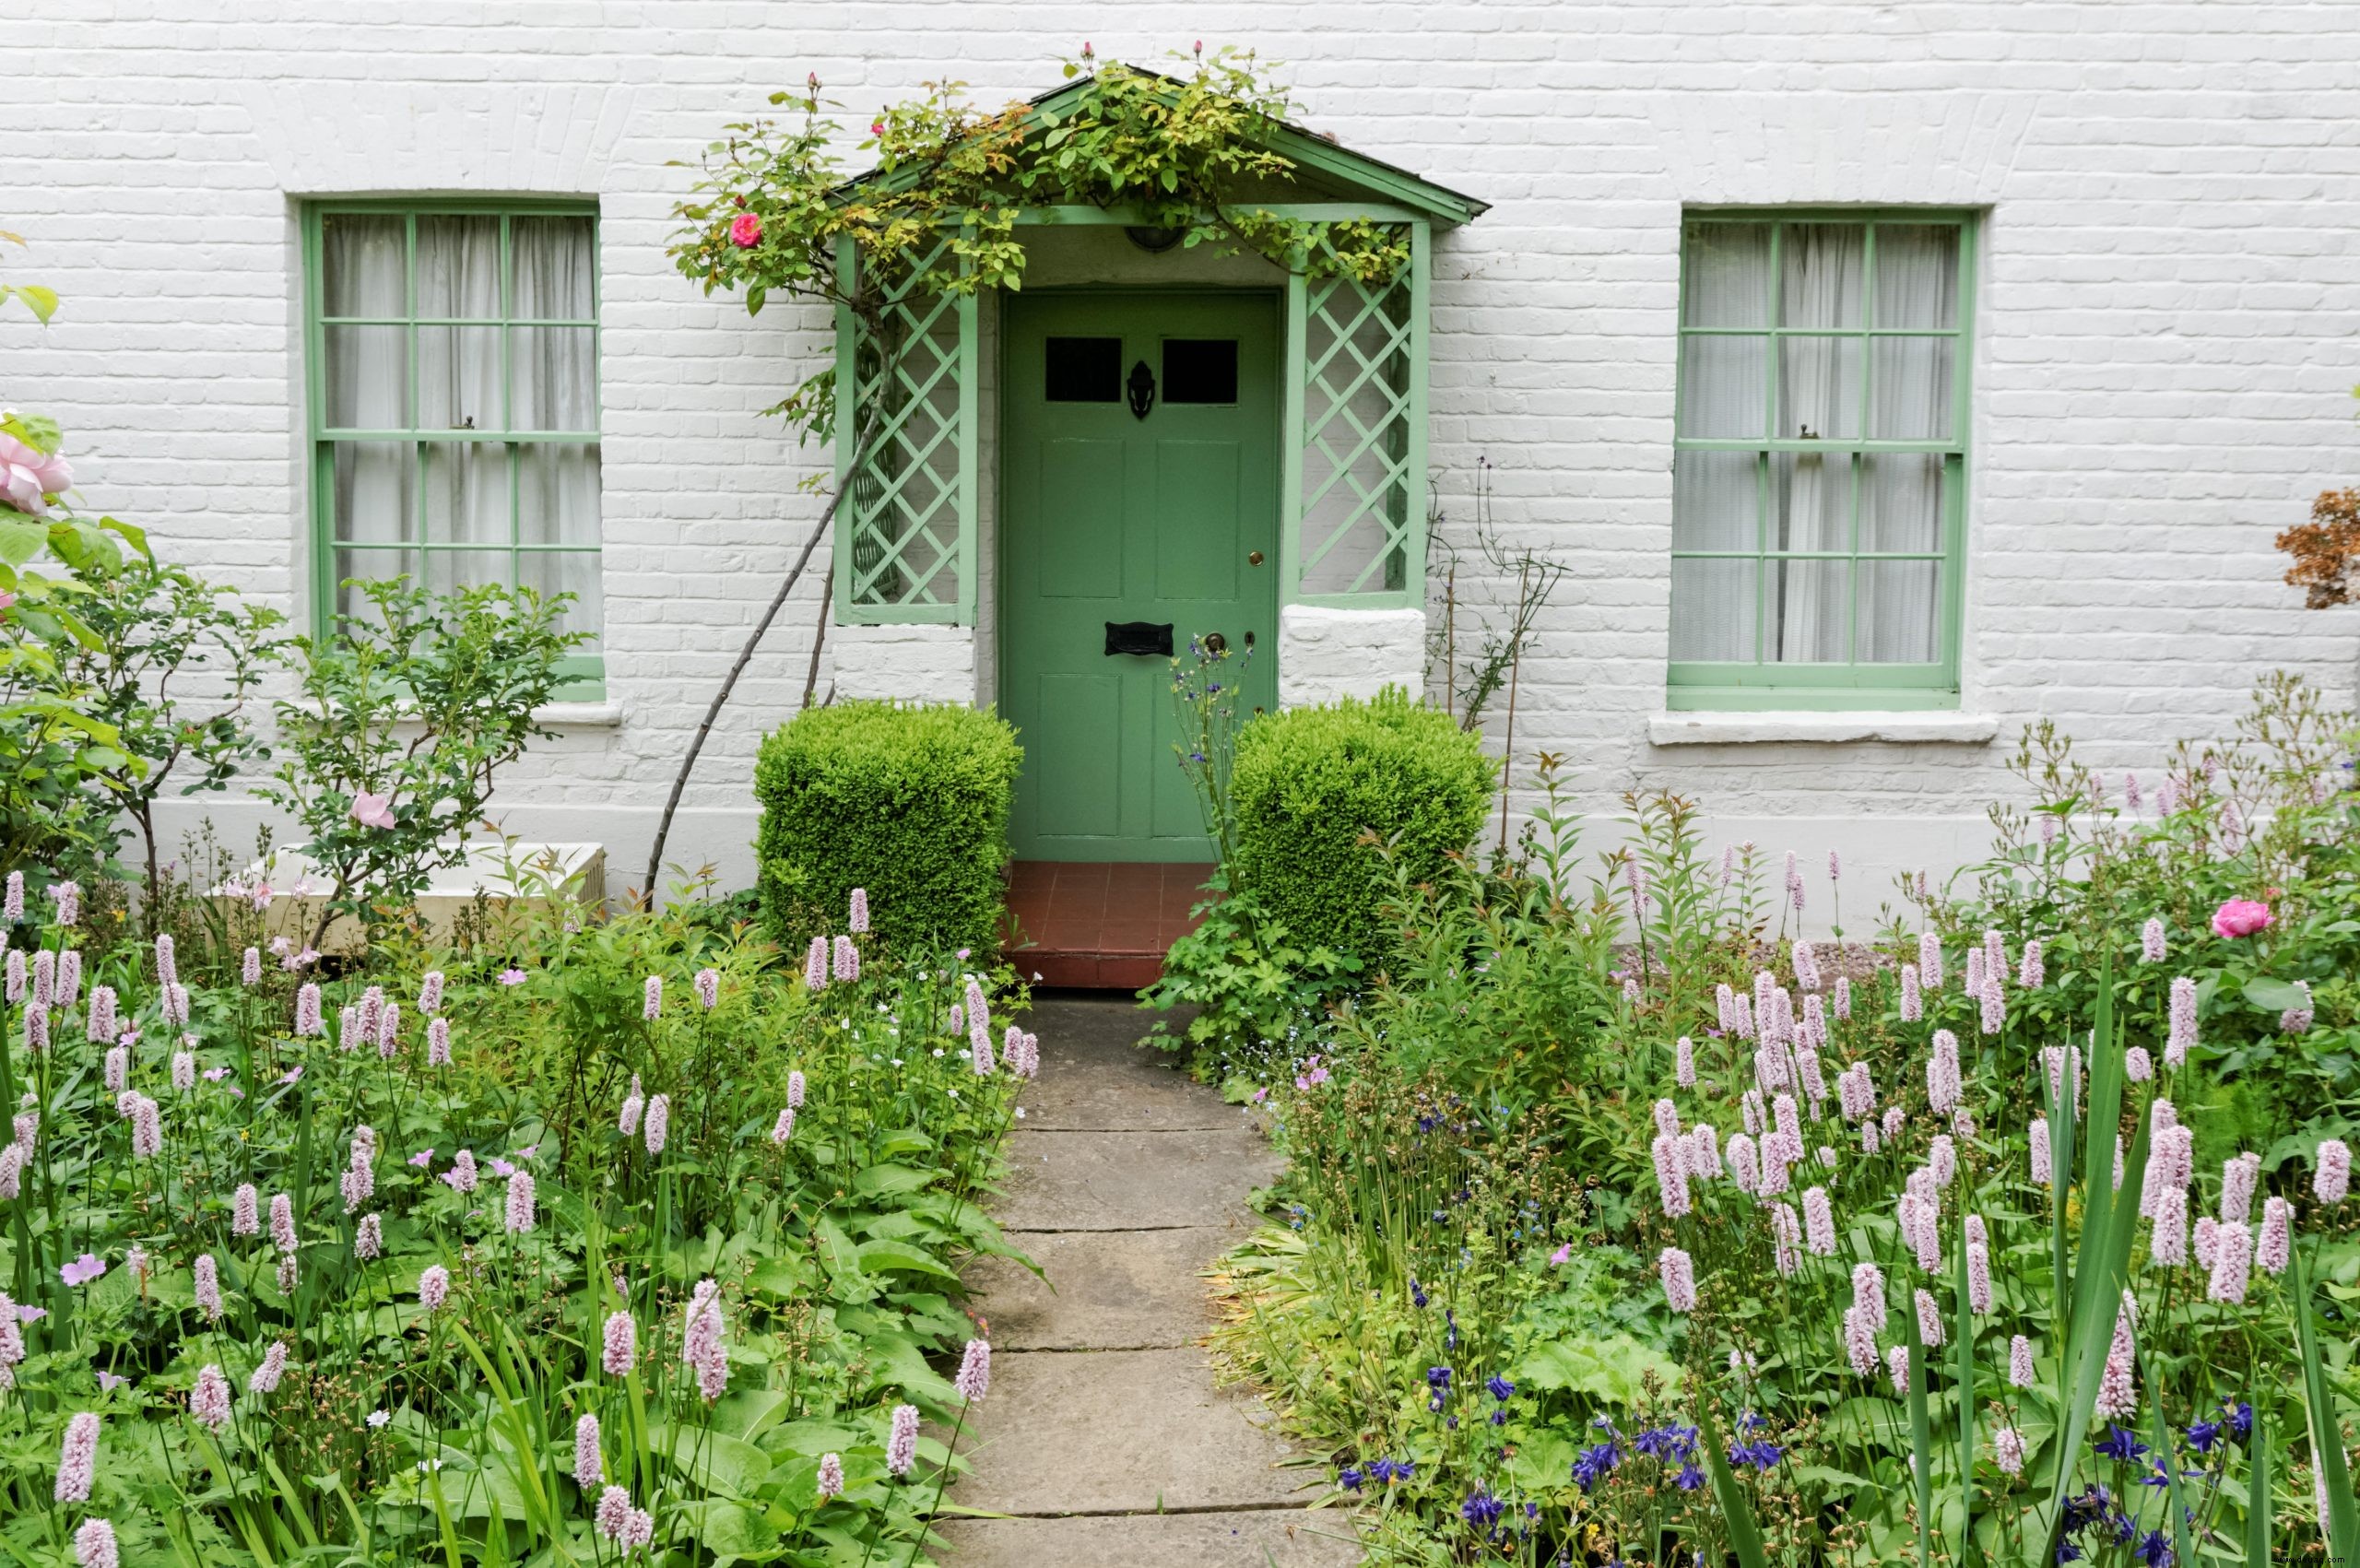 So steigern Sie die Attraktivität Ihres Hauses mit einem gepflegten Vorgarten 